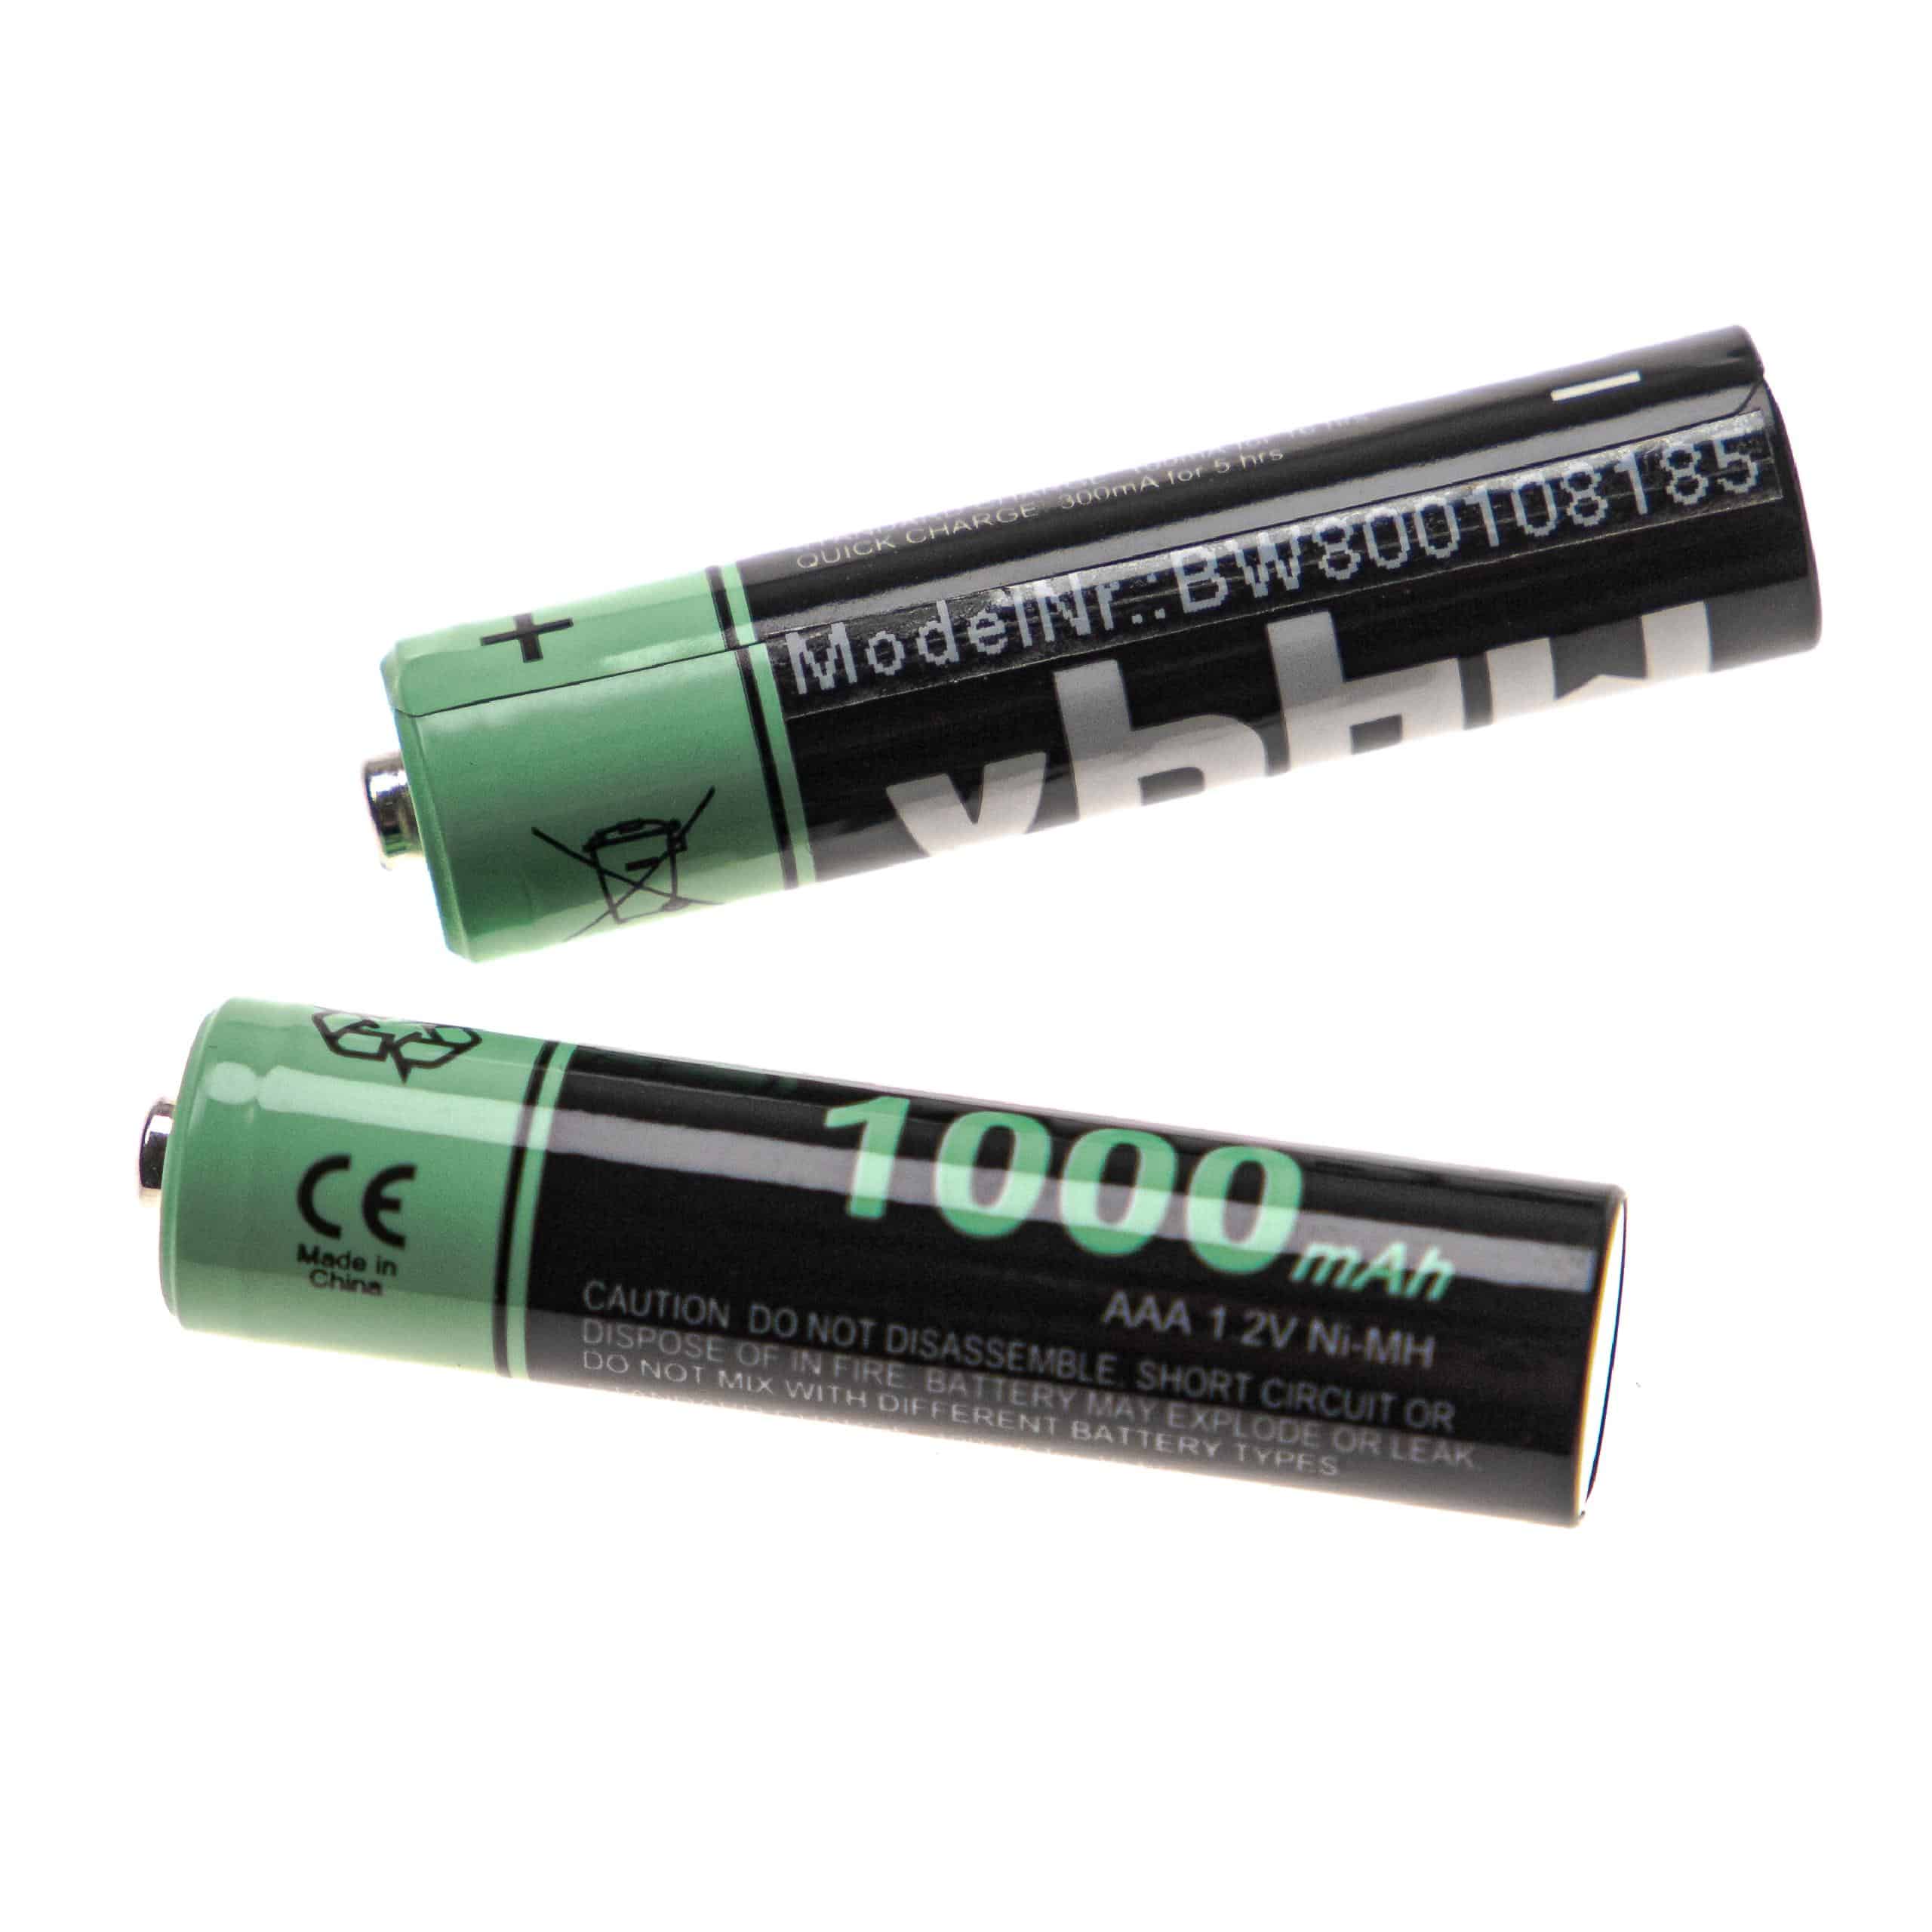 2x Batería para diversos dispositivos Philips, etc. - 1000 mAh 1,2 V NiMH